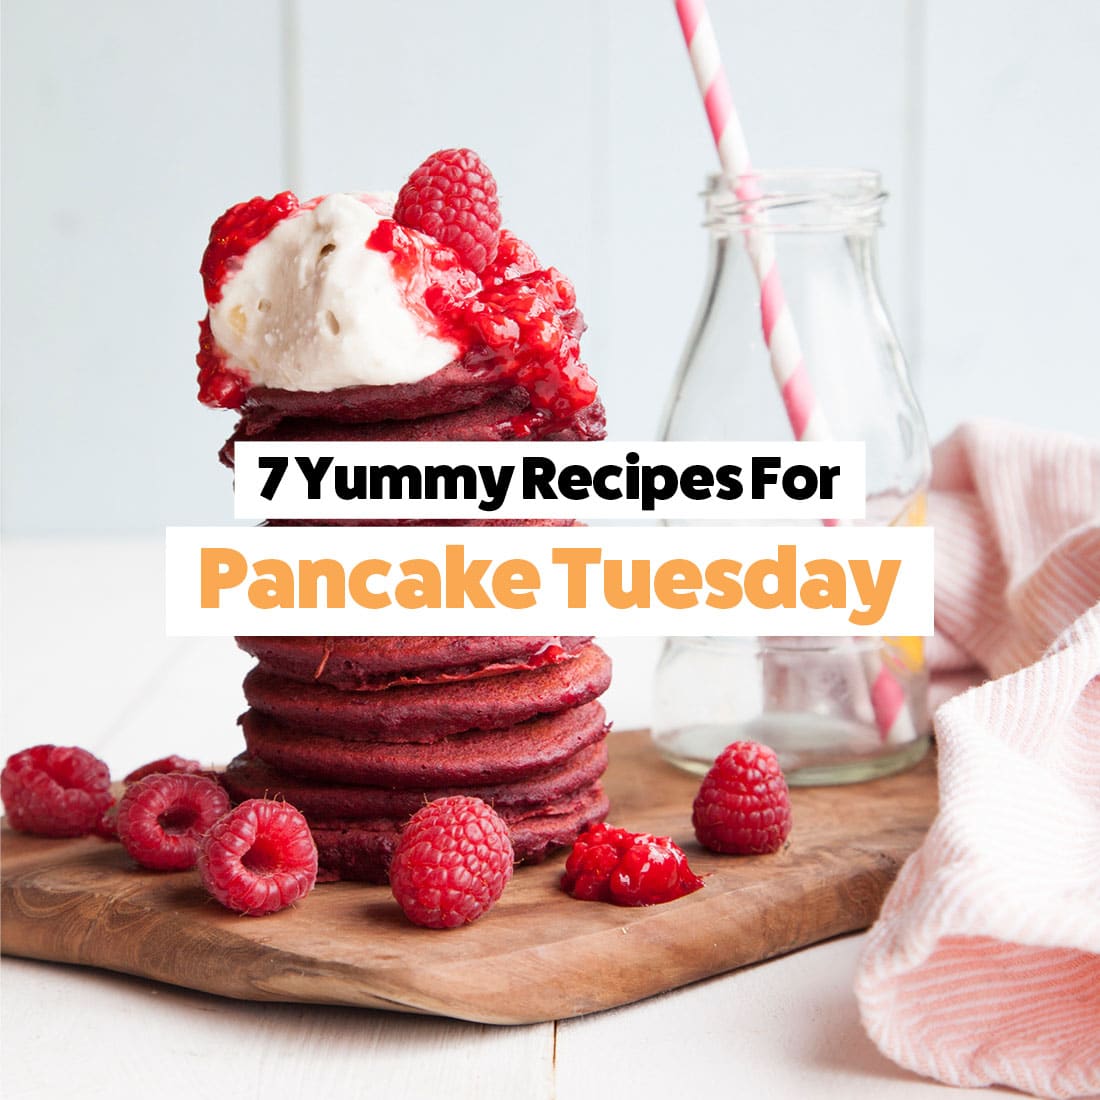 7 Yummy Pancake Tuesday Recipes - Baby Led Feeding